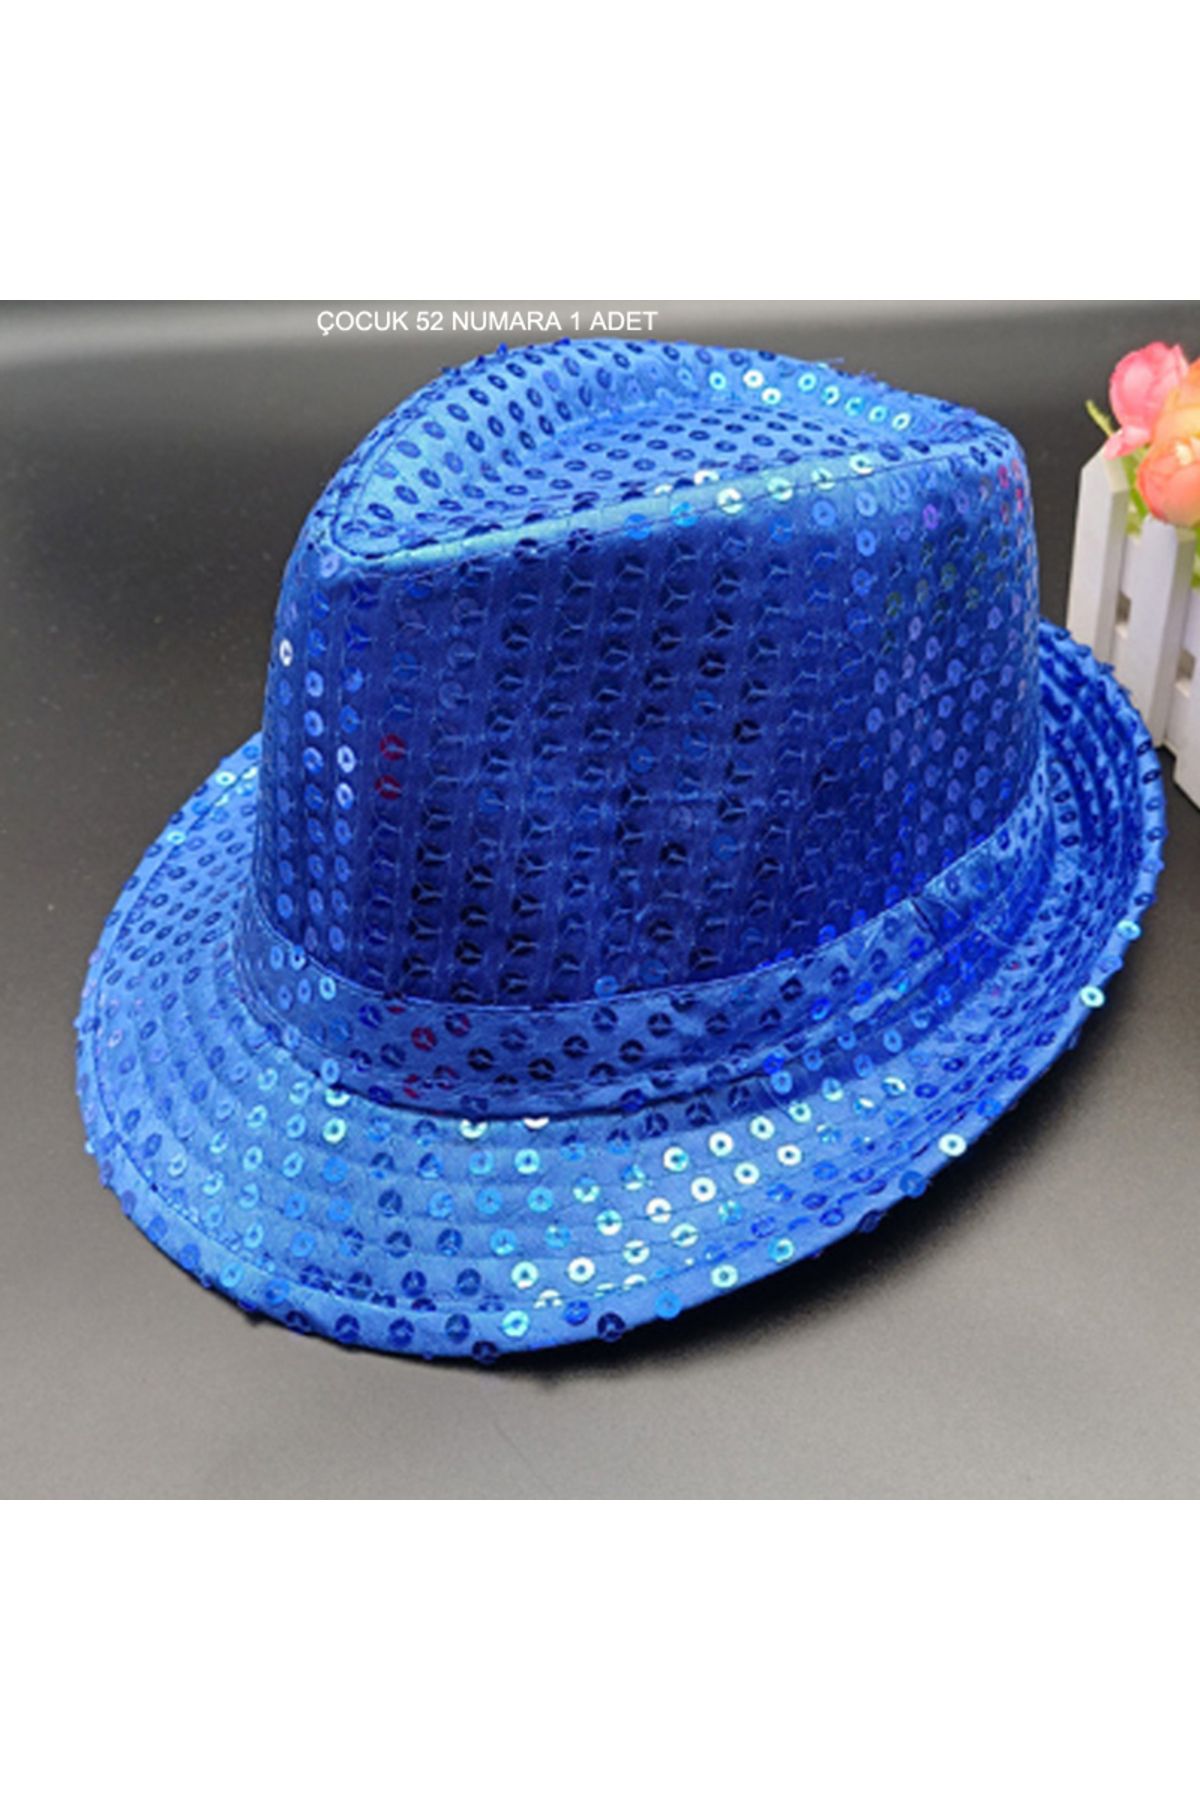 Pandoli Koyu Mavi Renk Pullu Michael Jackson Şapkası Çocuk 4/5 Yaş 1 Adet Gösteri